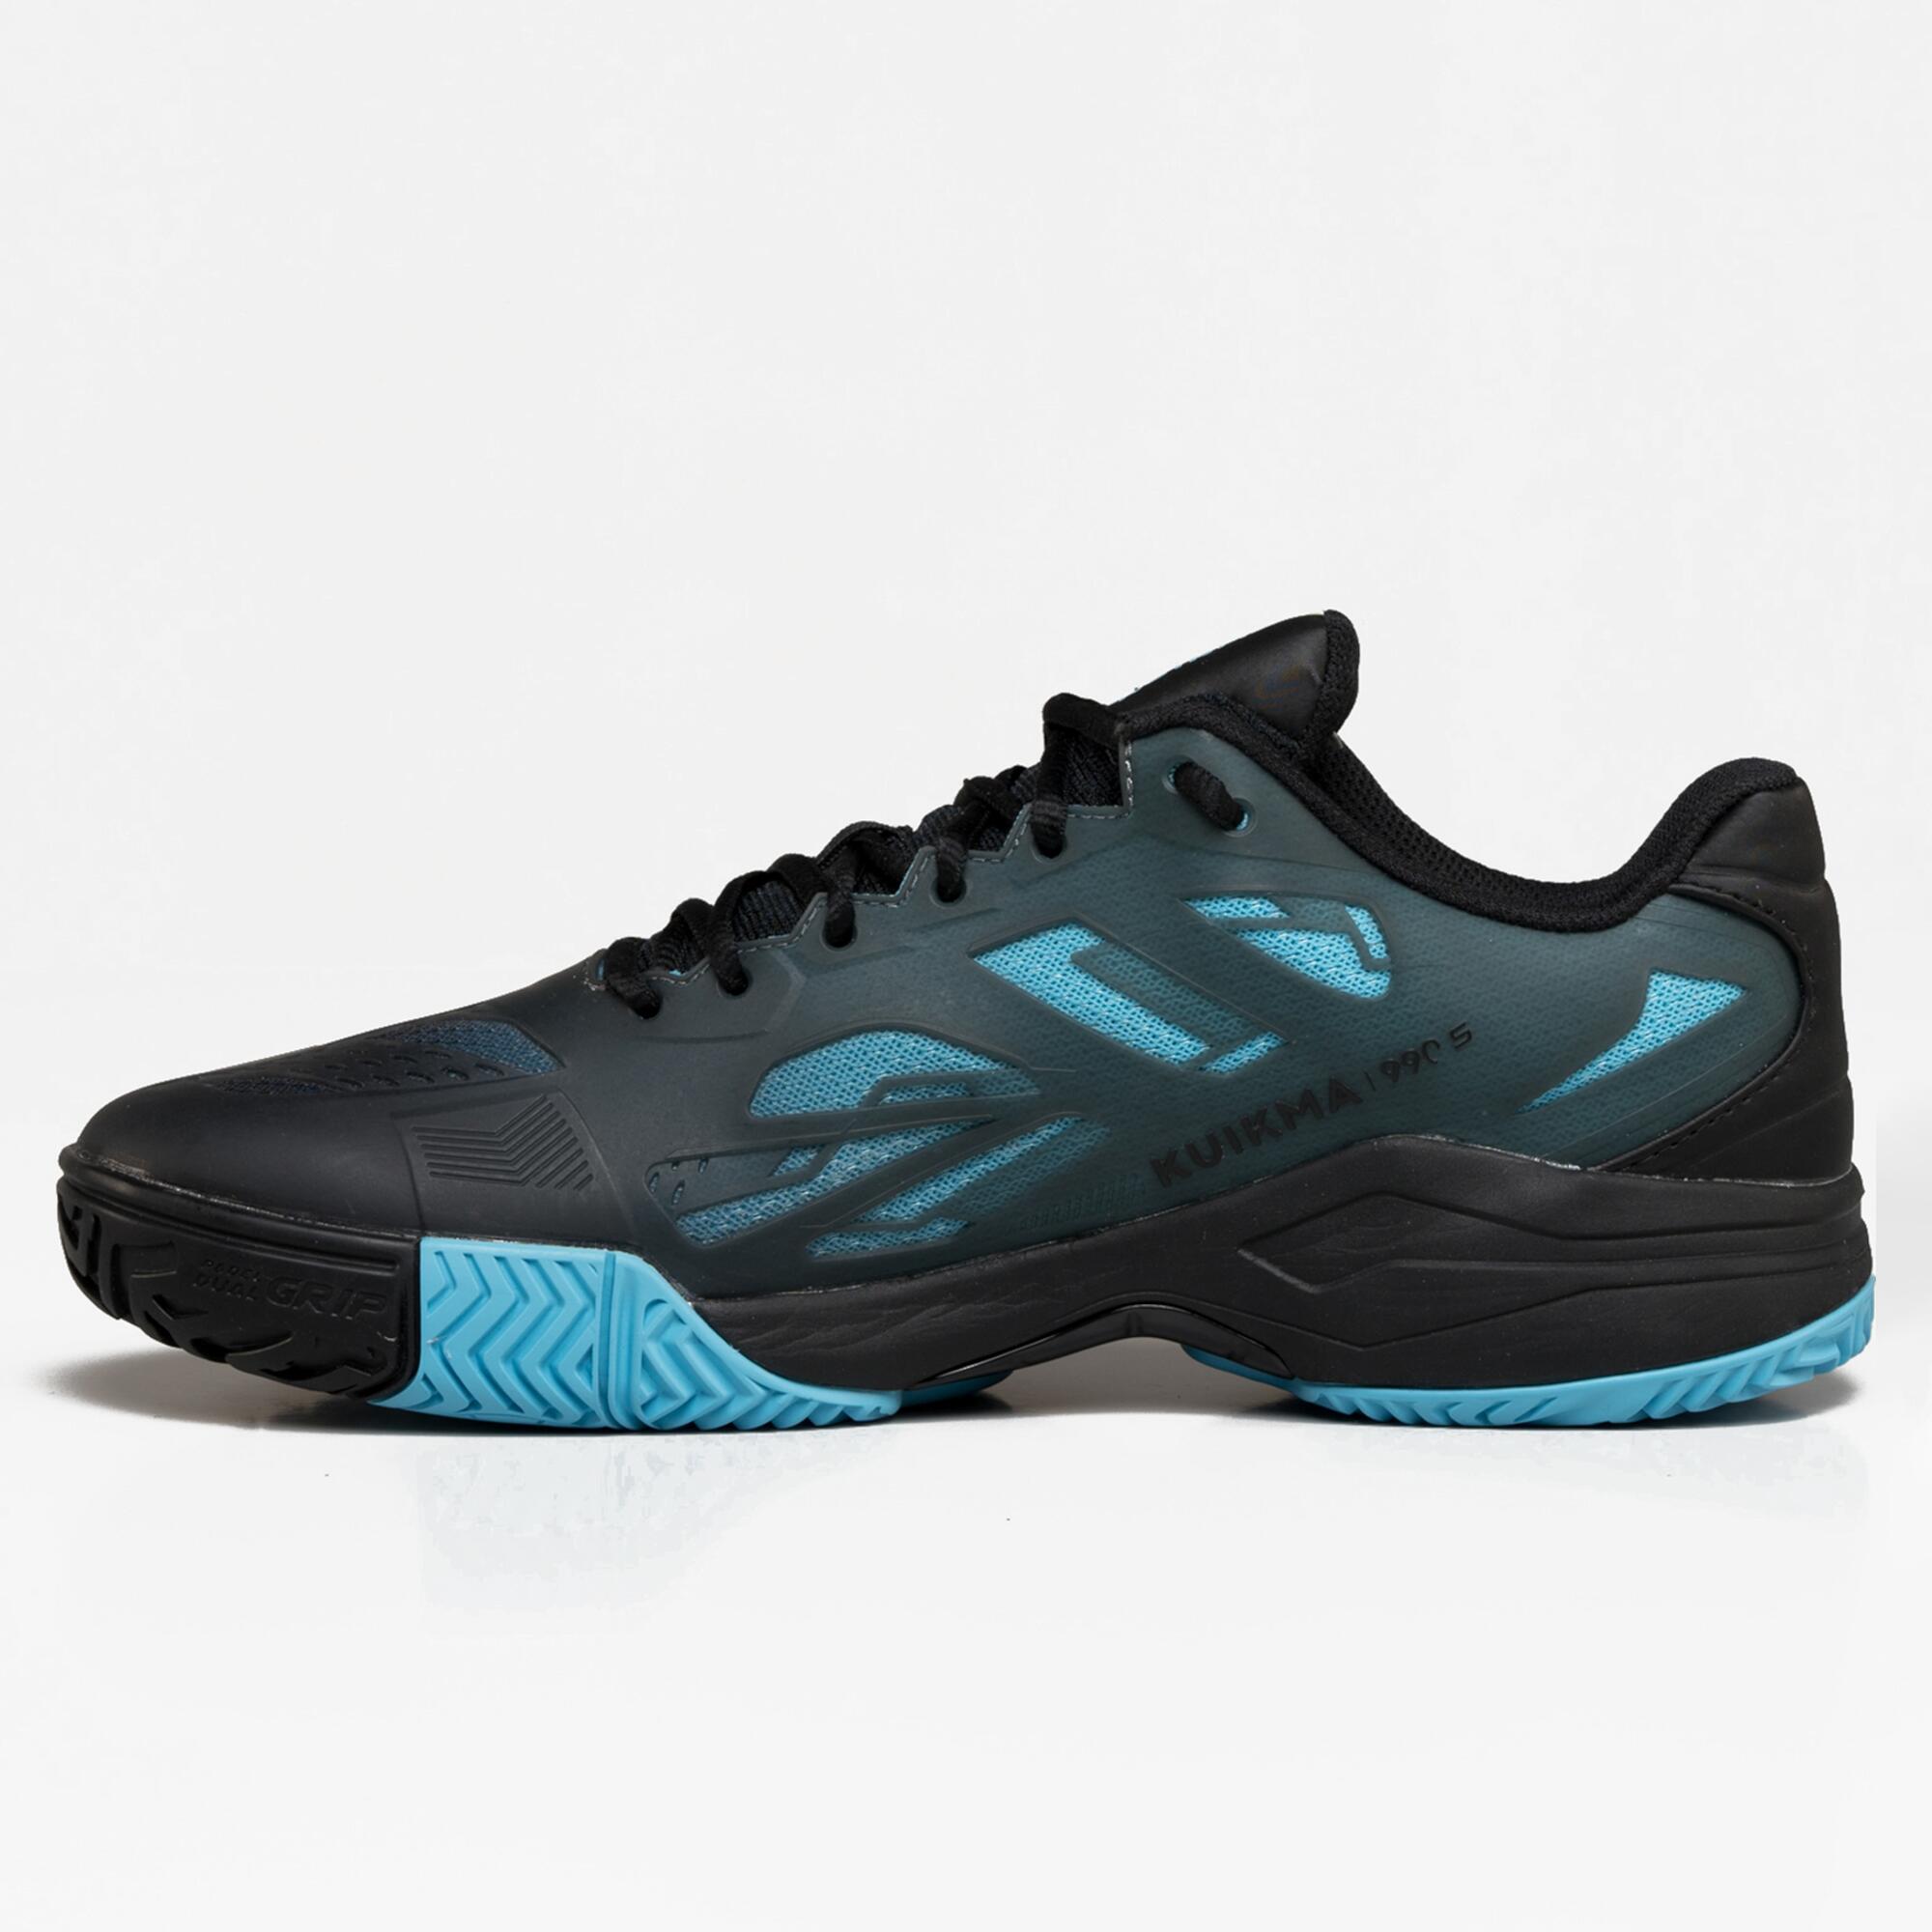 Men's Padel Shoes PS 990 Stability - Blue/Black 2/7